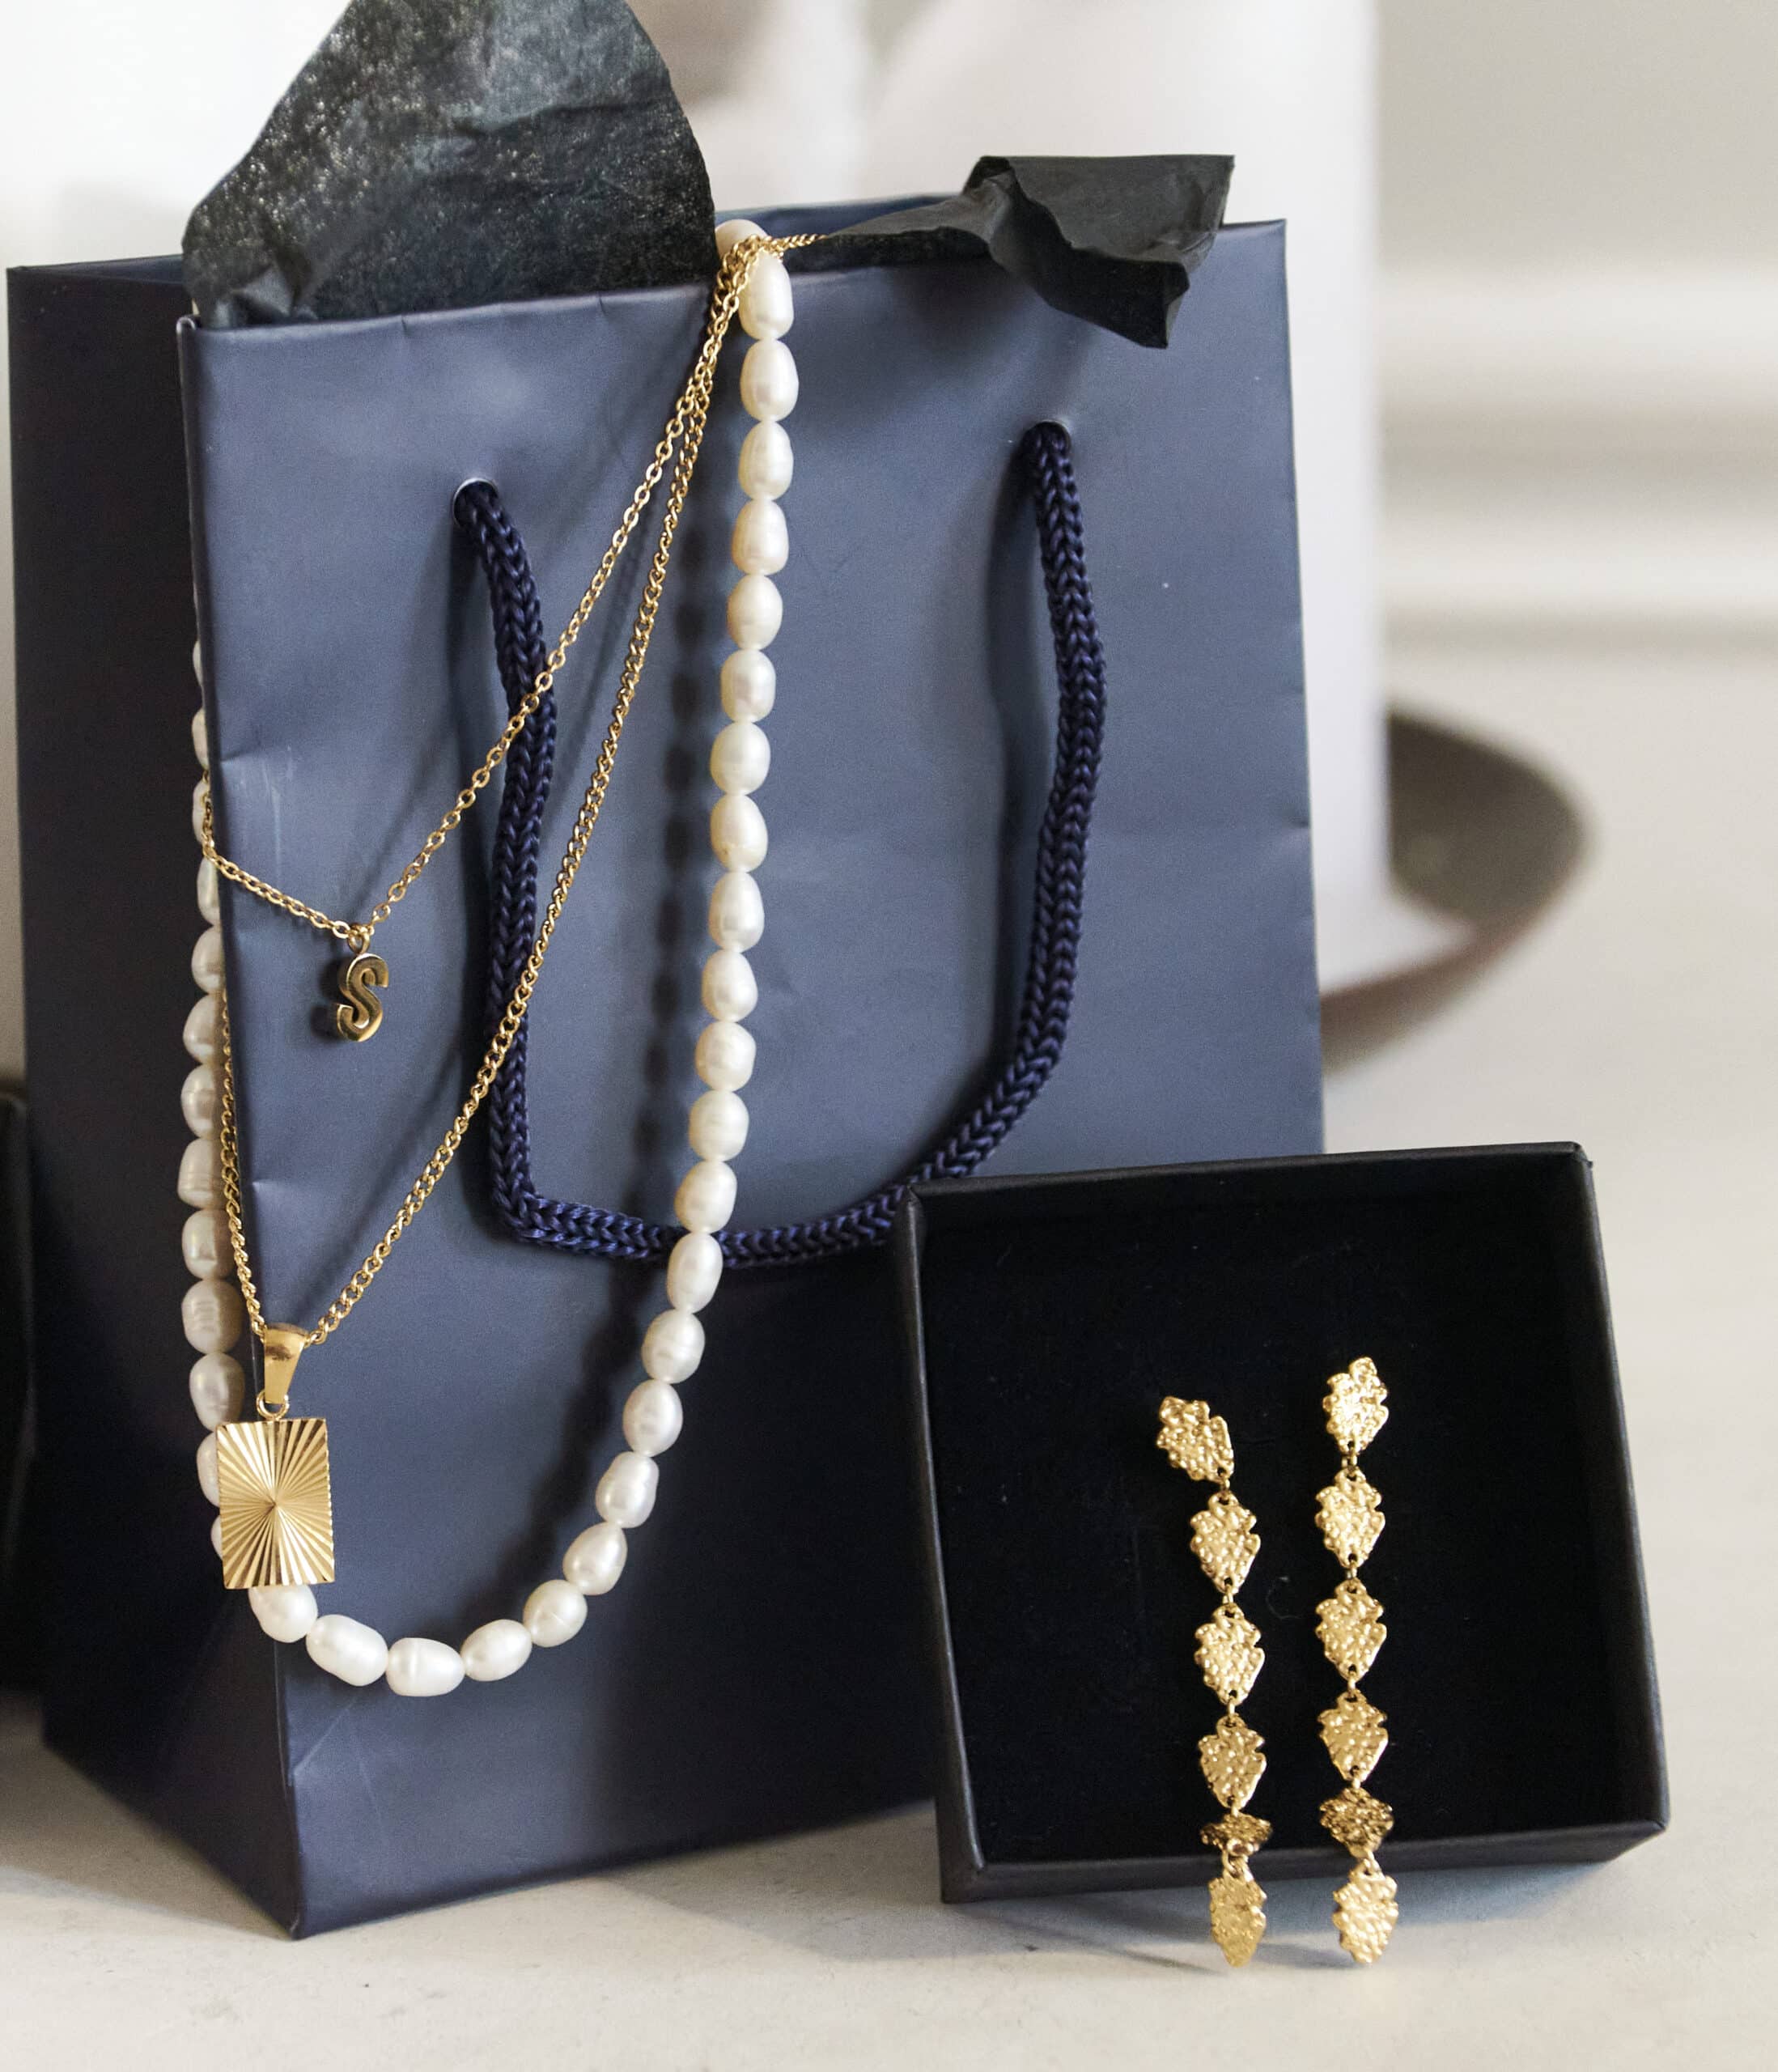 En gavepose med en halskæde, øreringe og perler.